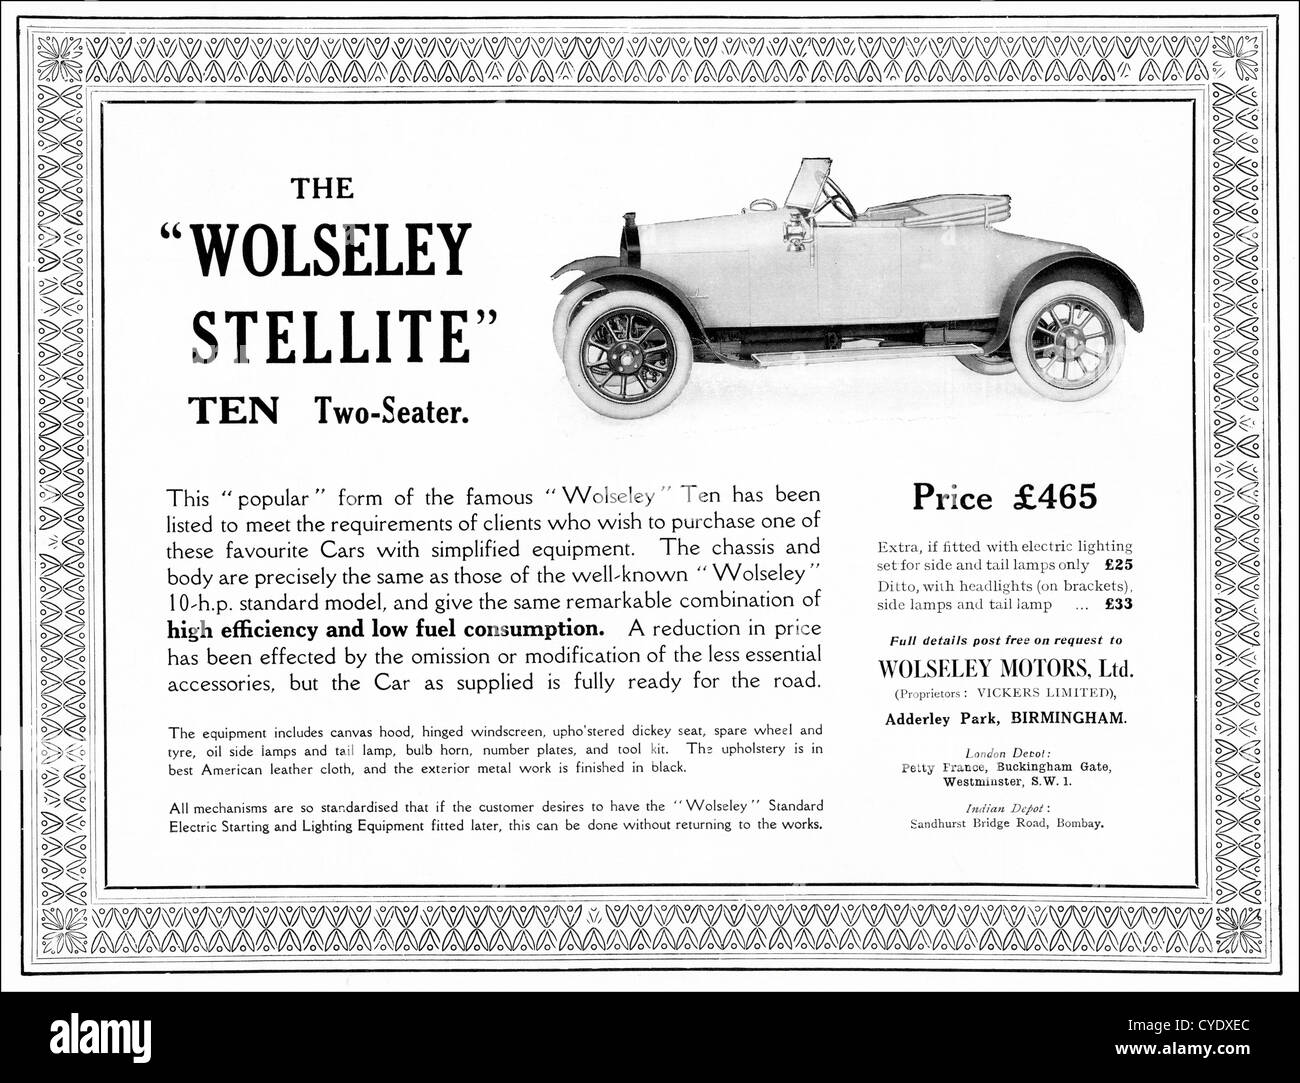 Original Vintage 1920 anuncio impreso de la revista inglesa publicidad Wolseley Stellite 10 biplaza coche fabricado 1920 - 1924 en Birmingham, Inglaterra Foto de stock